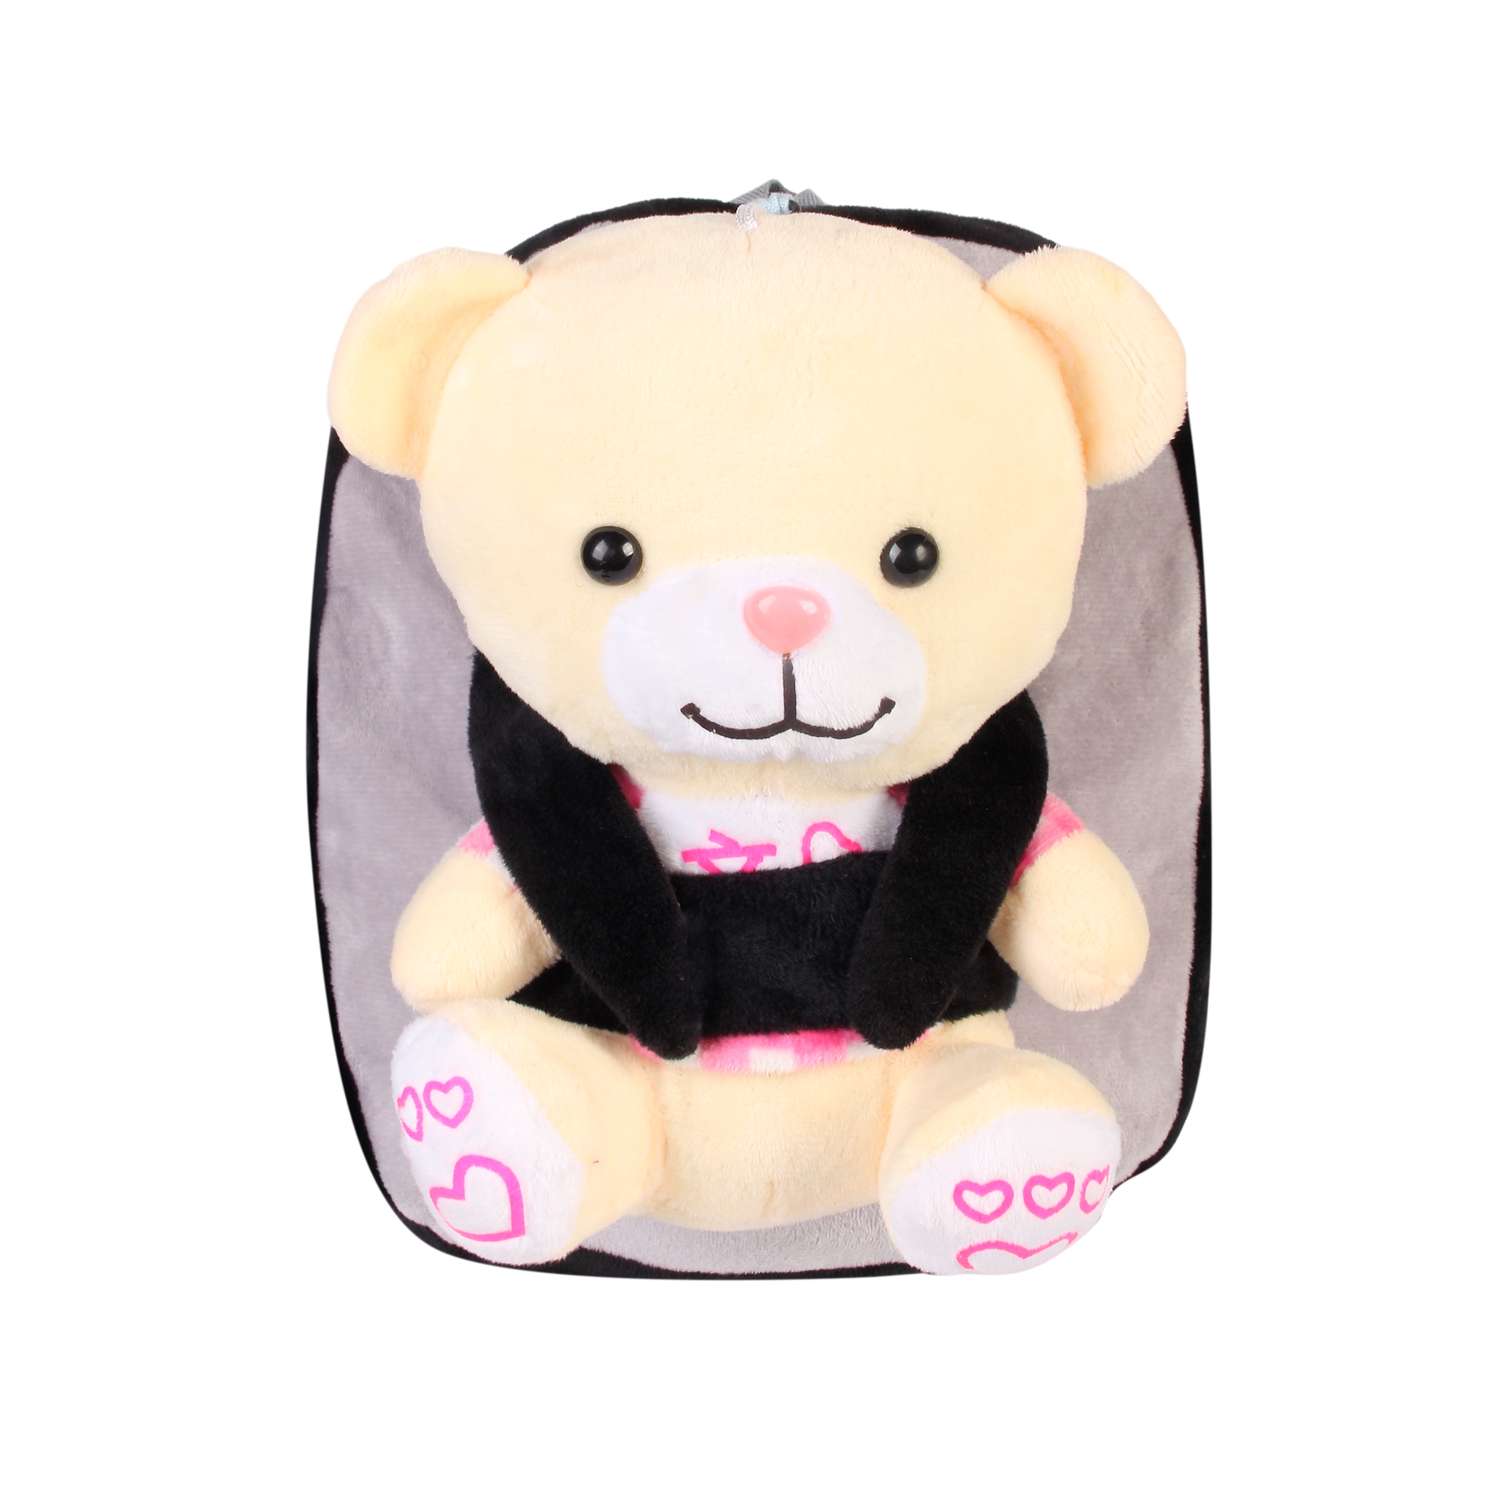 Рюкзак с игрушкой Little Mania серо-чёрный Мишка бледно-жёлтый - фото 1